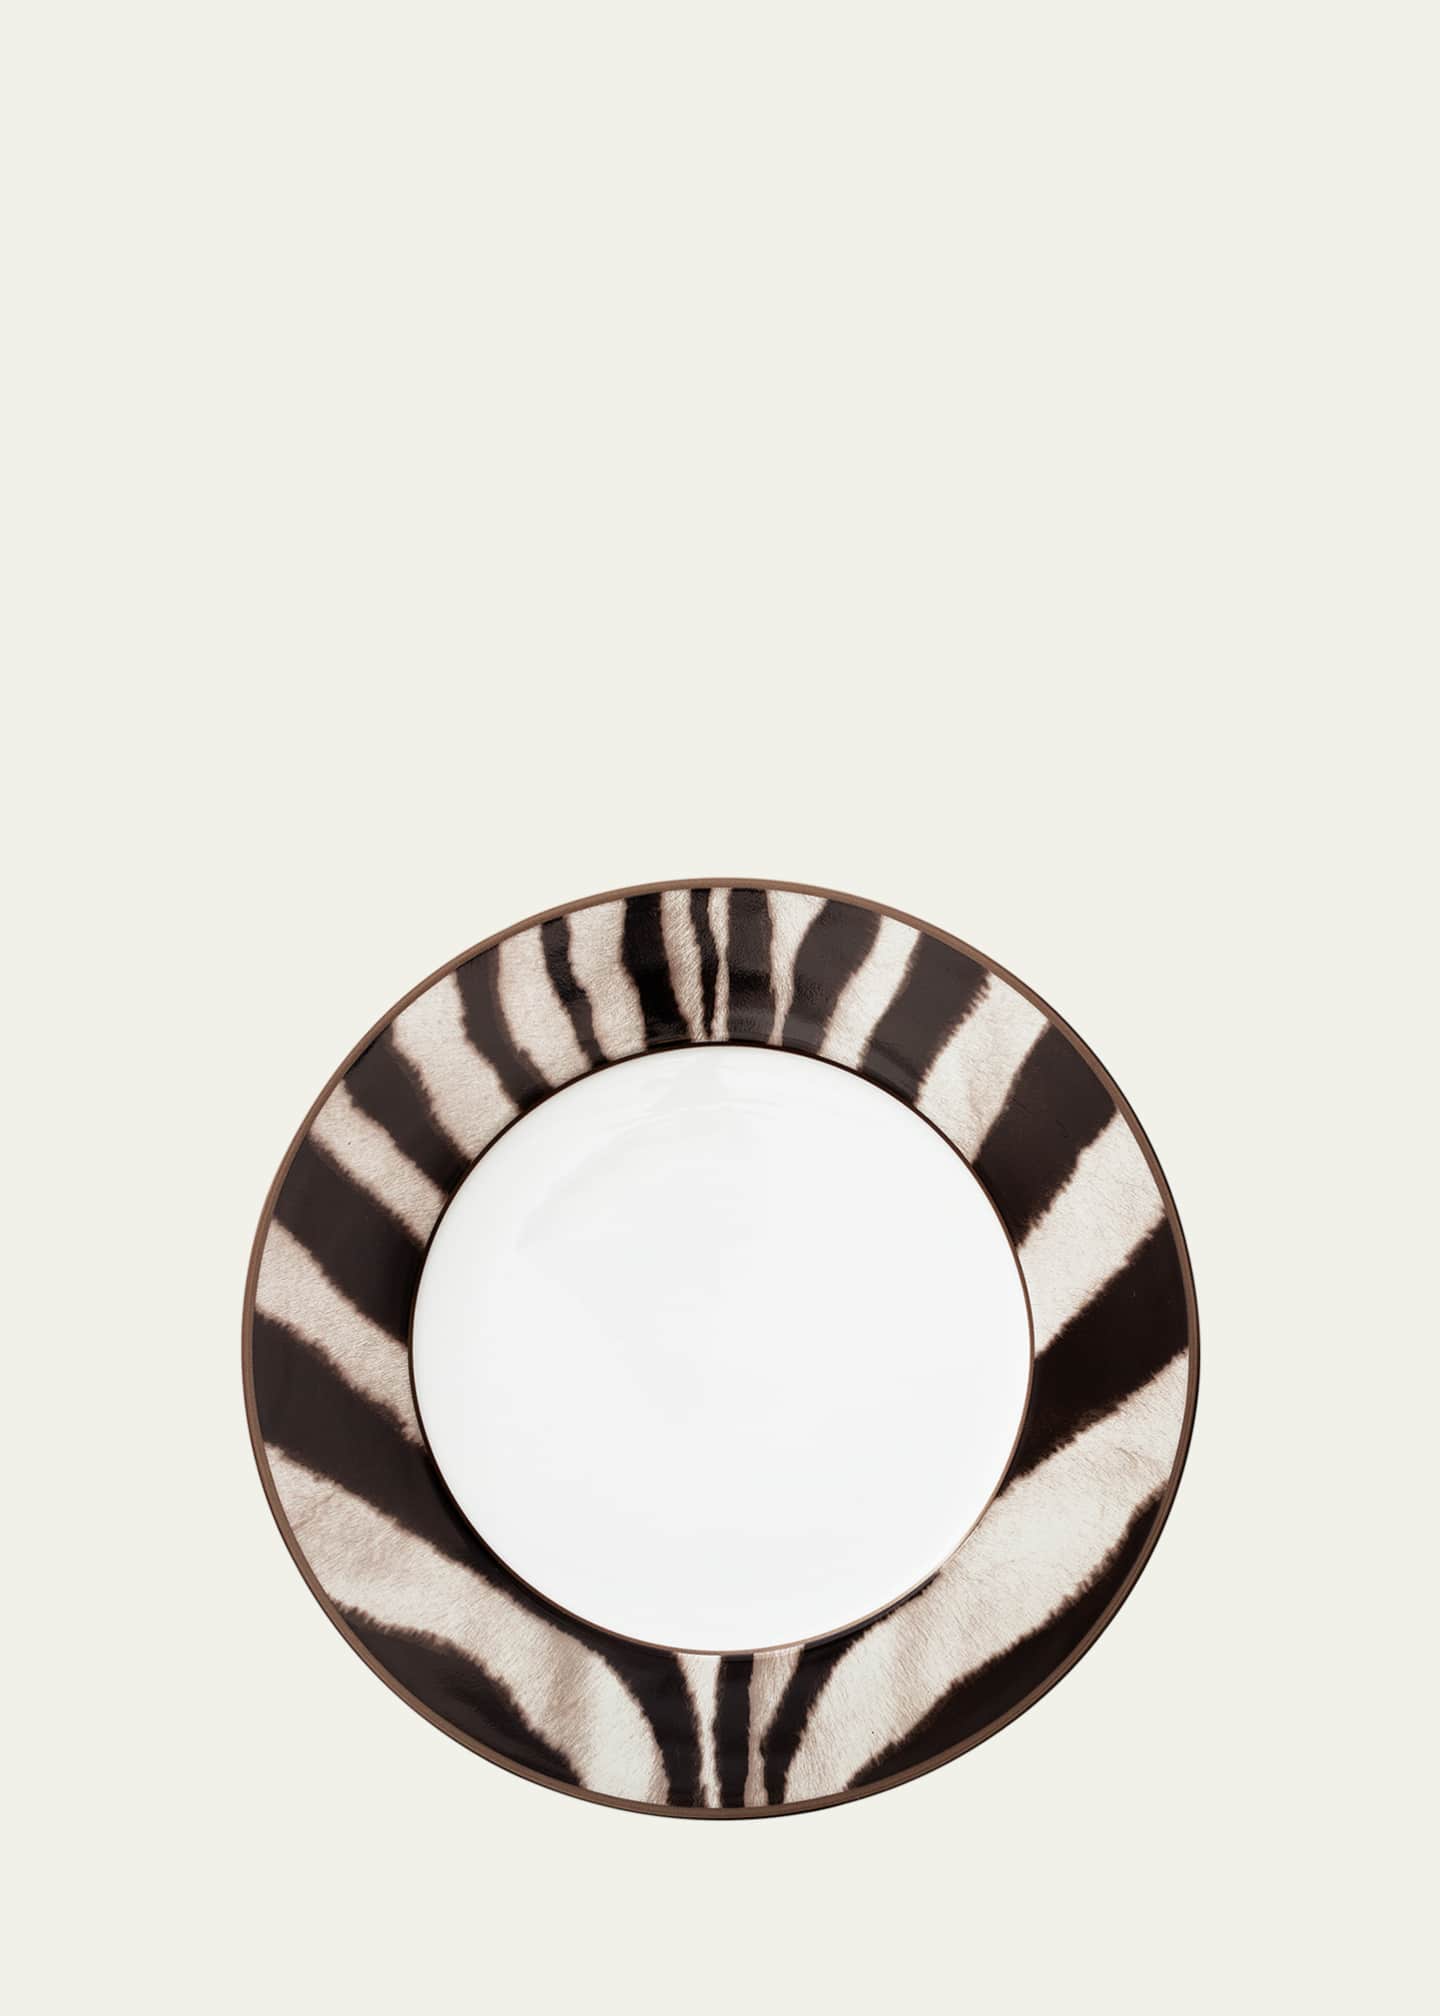 Ralph Lauren Home Kendall Zebra Dinner Plate - Bergdorf Goodman